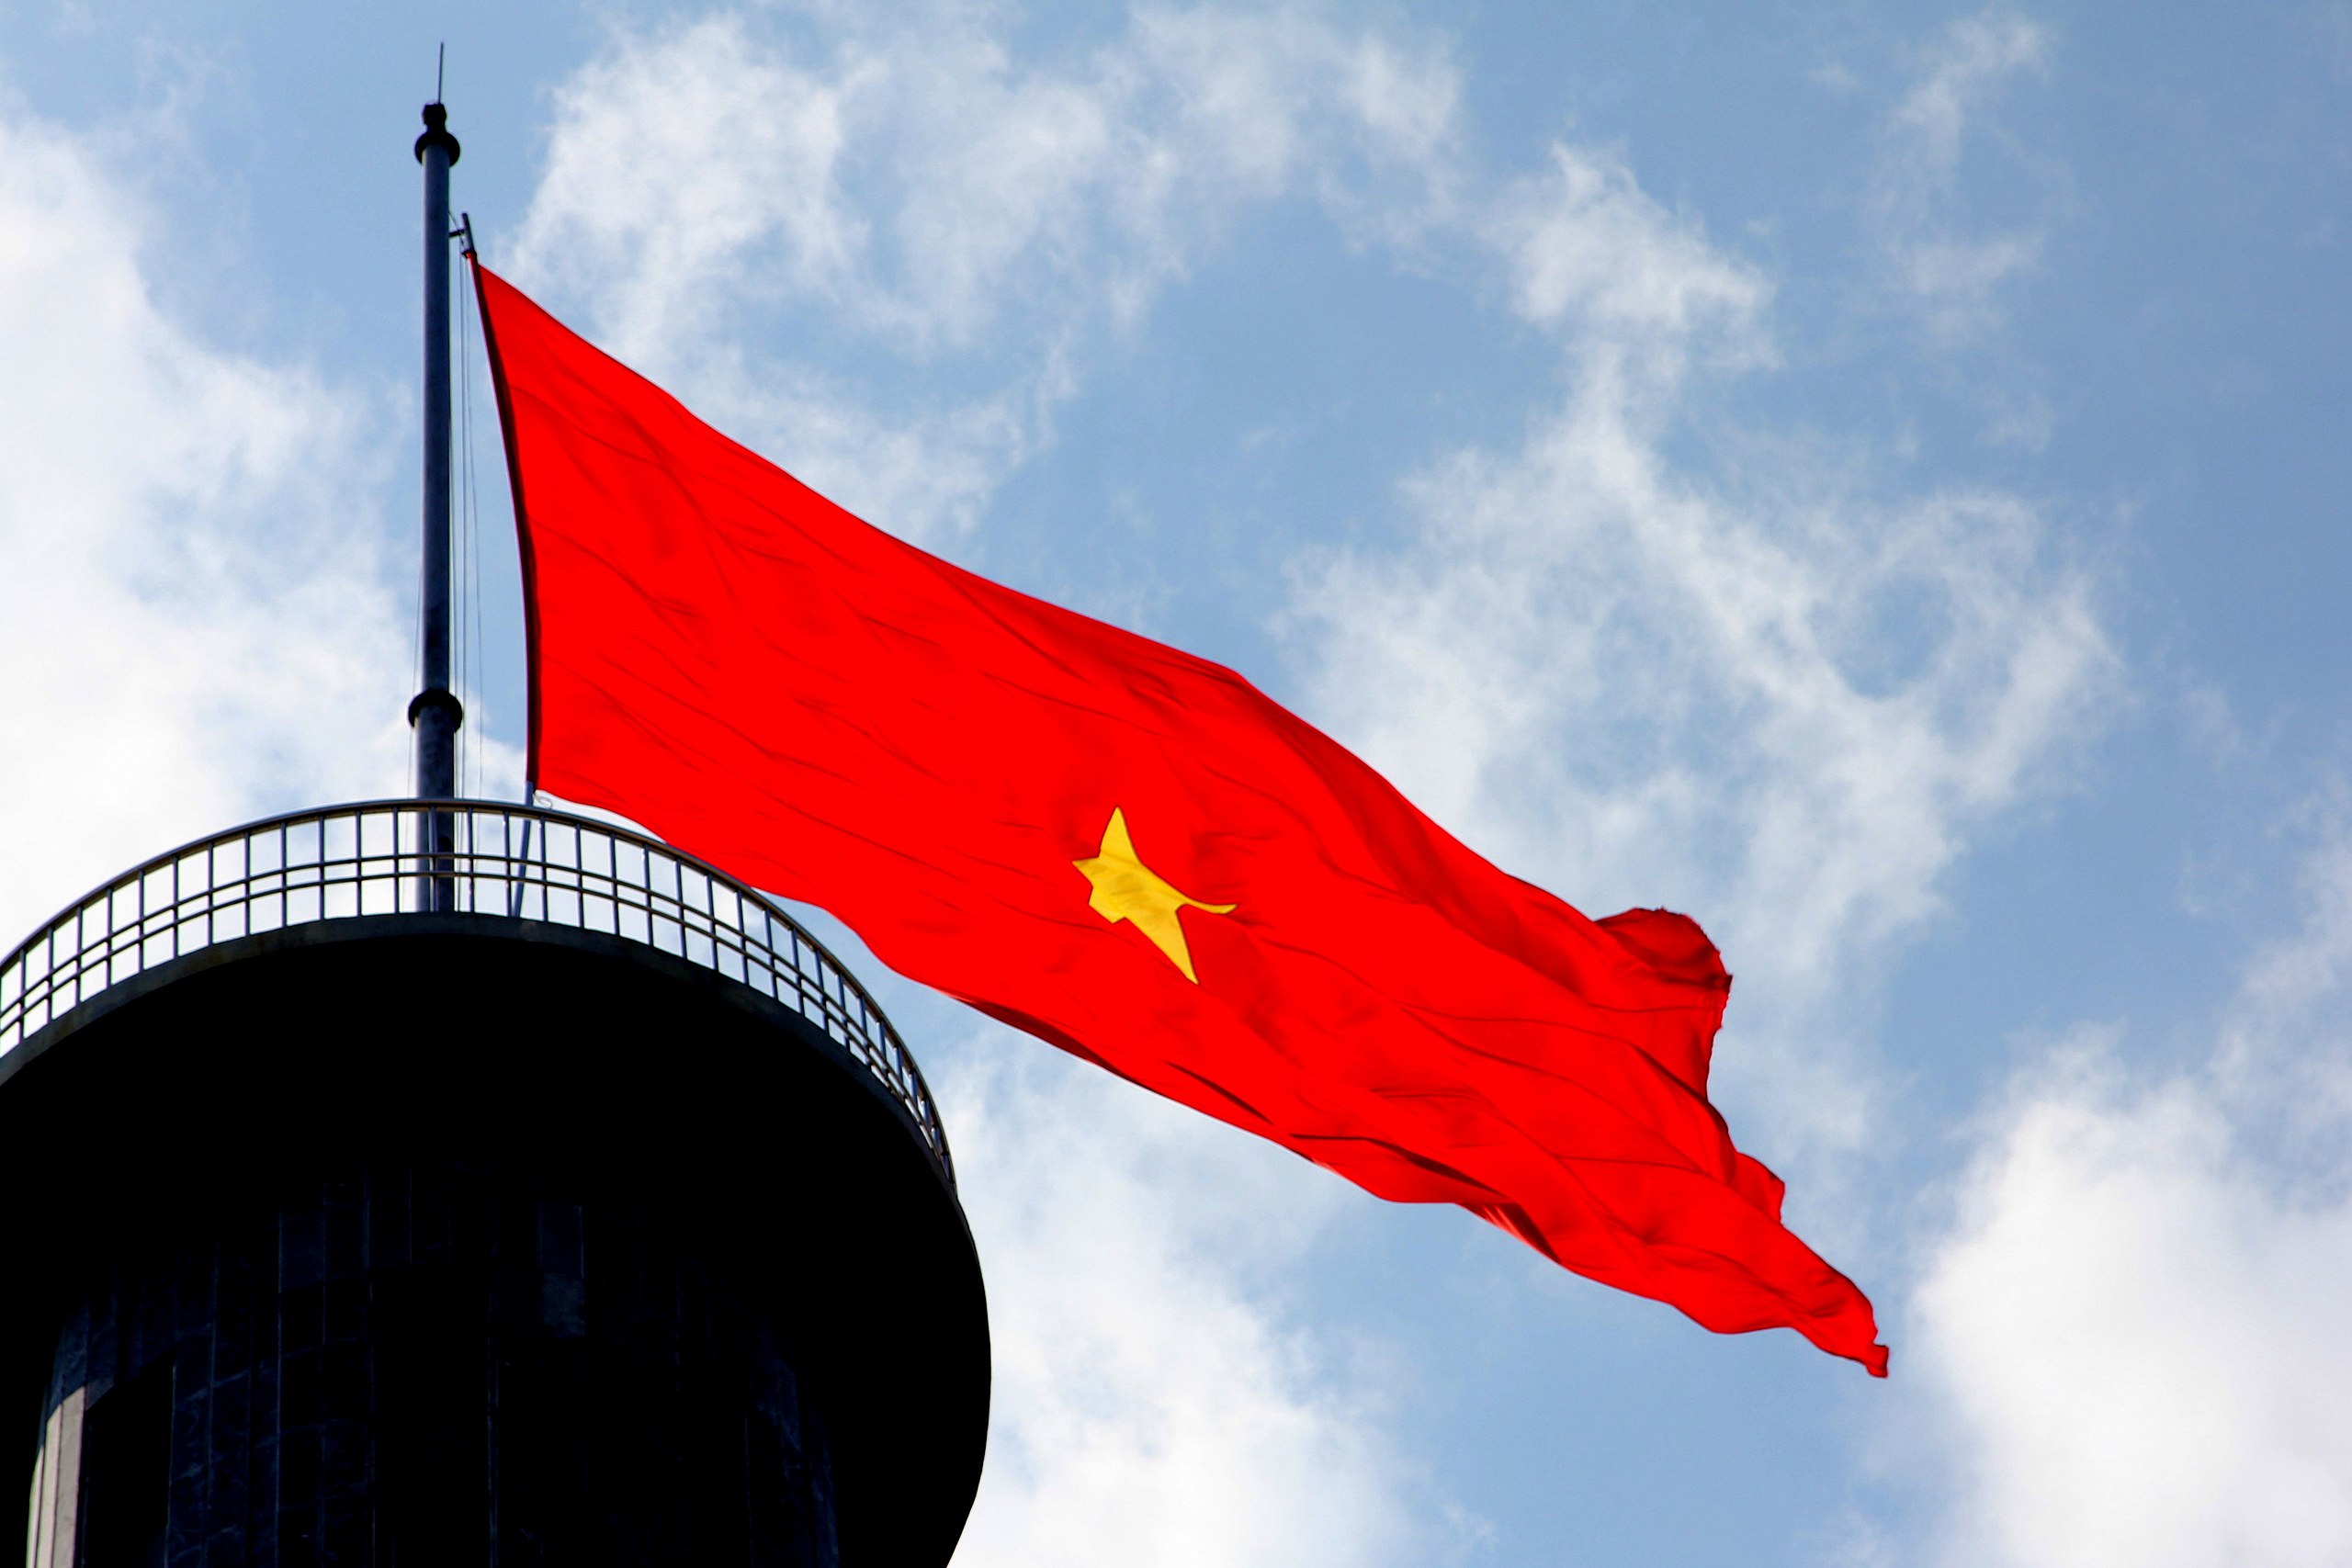 Lá cờ Việt Nam là biểu tượng quốc gia, là tấm gương cho tình yêu quê hương. Hãy dùng hình nền lá cờ Việt Nam làm nền cho máy tính của bạn để thể hiện sự tôn trọng và lòng yêu nước sâu sắc của mình.